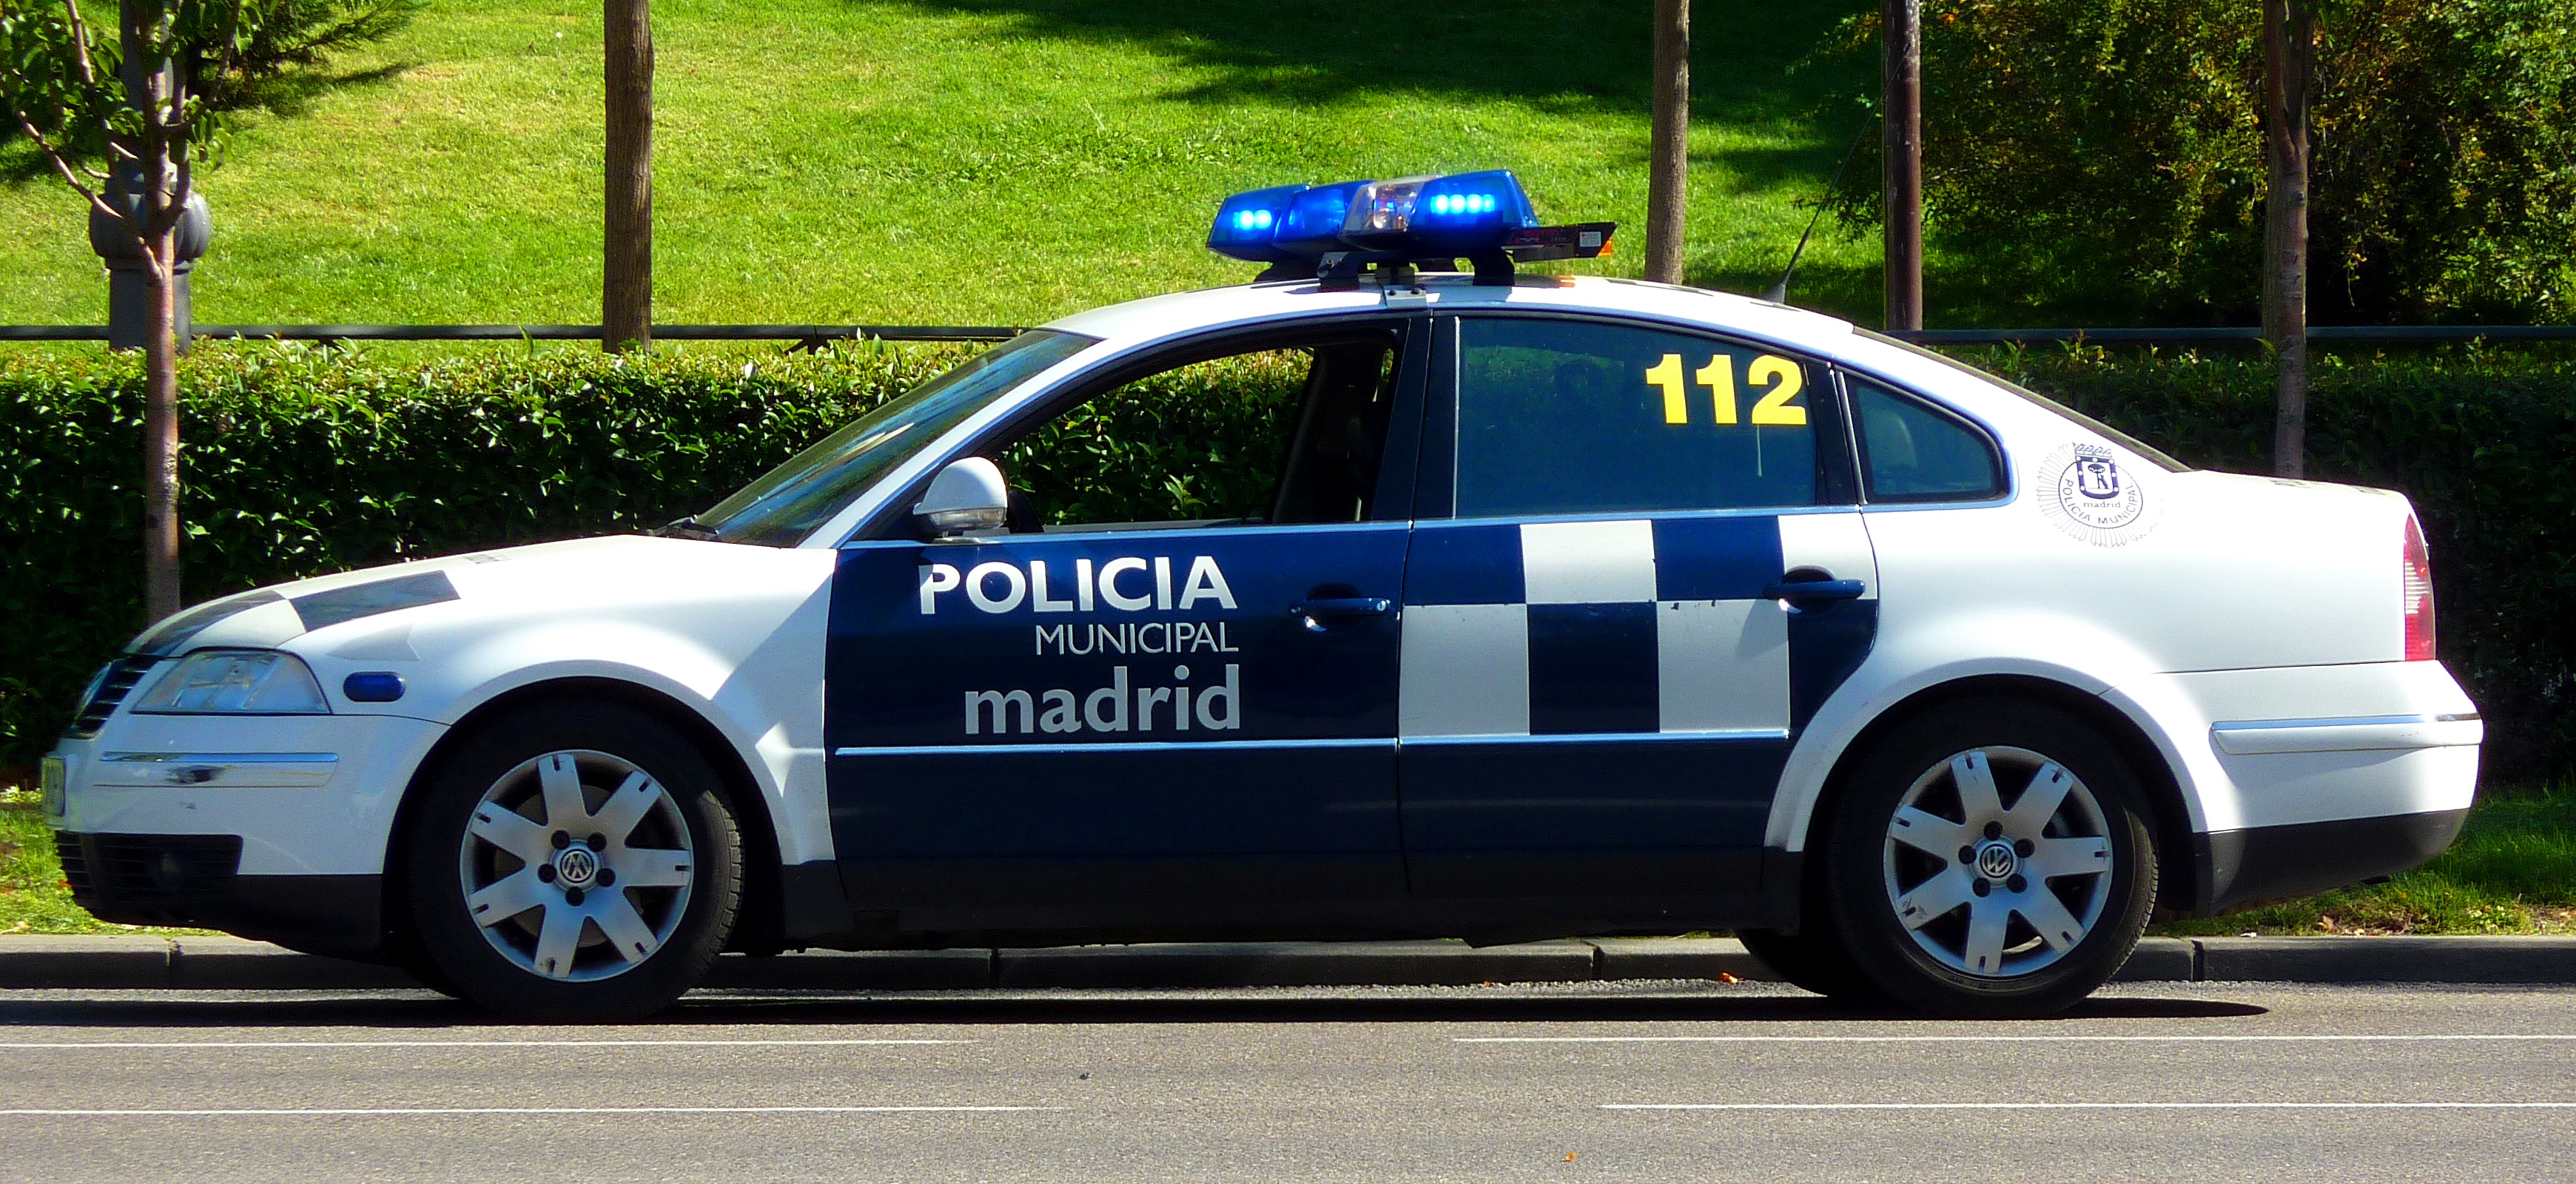 Volkswagen Passat Policía Municipal Madrid